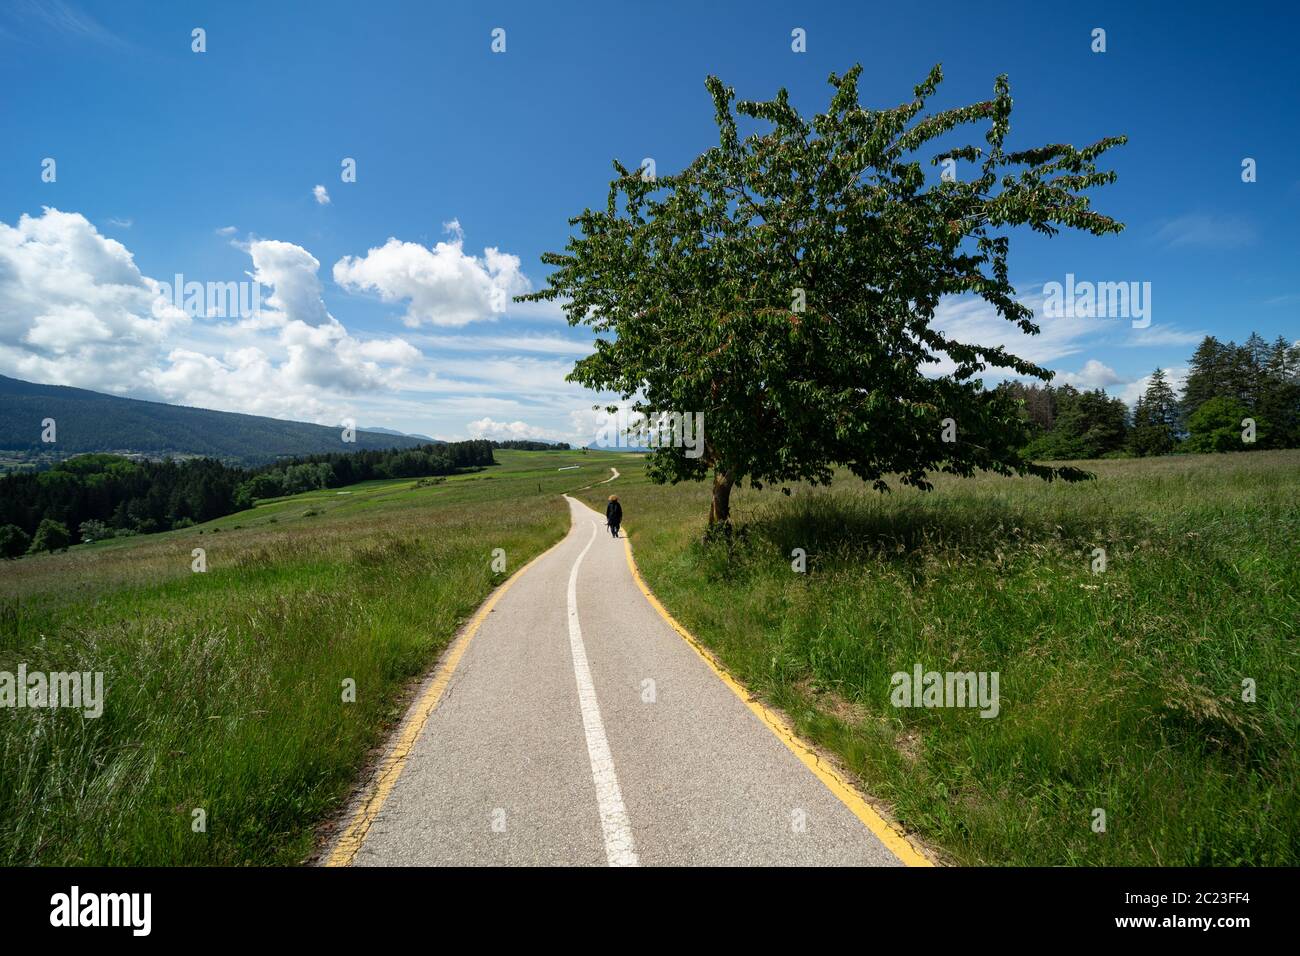 Piste cyclable et piétonne à travers les prairies alpines et les forêts de Val di non, Tyrol du Sud. Italie ; piste cyclable dans la nature Banque D'Images